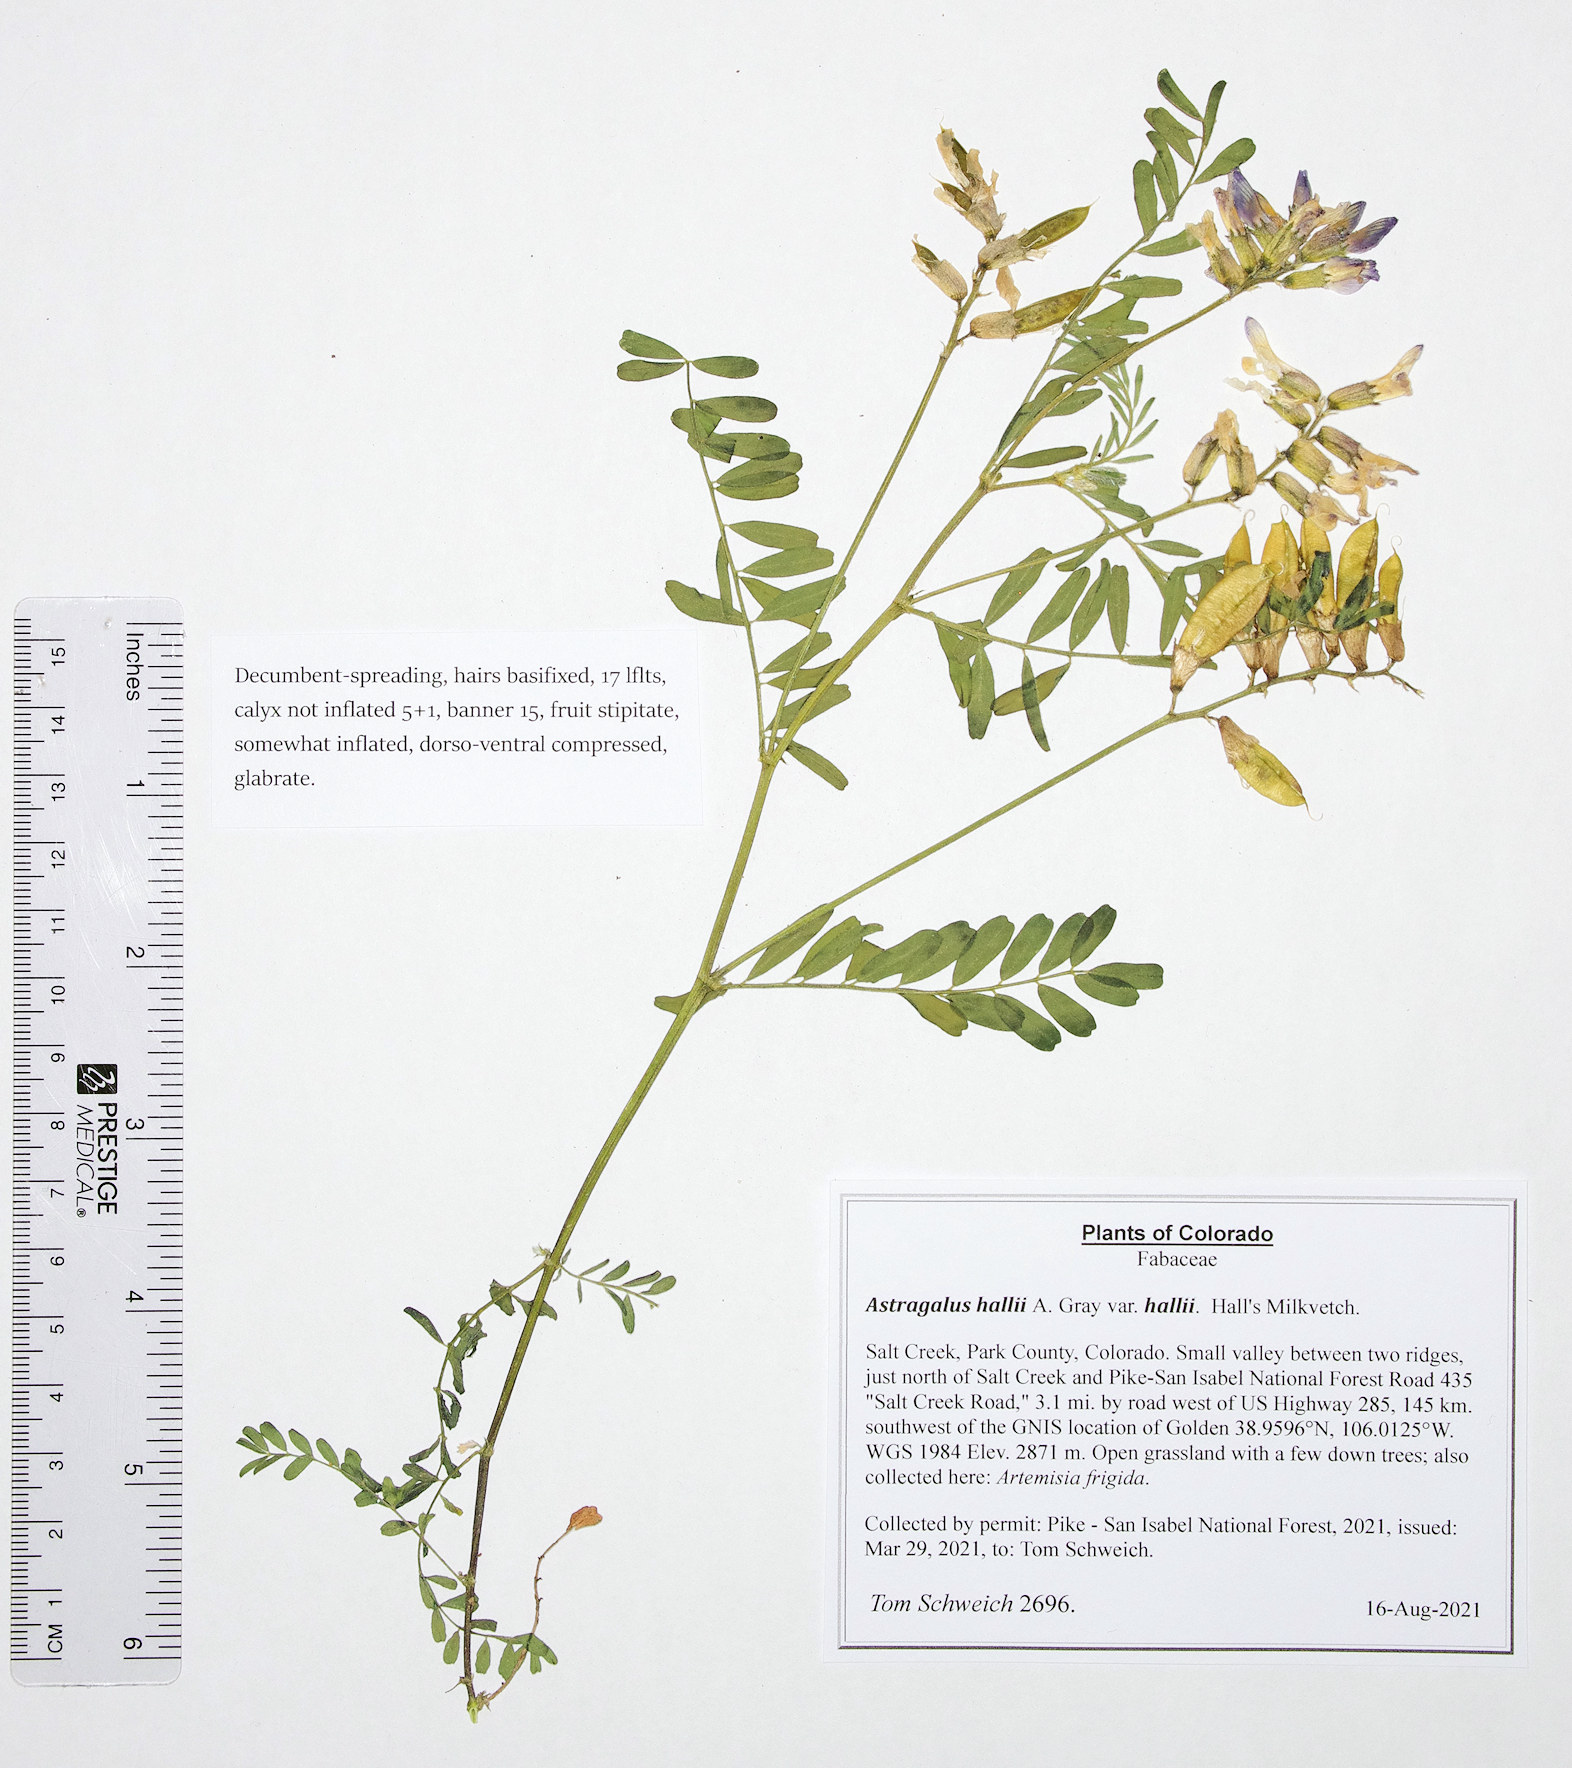 Fabaceae Astragalus hallii hallii